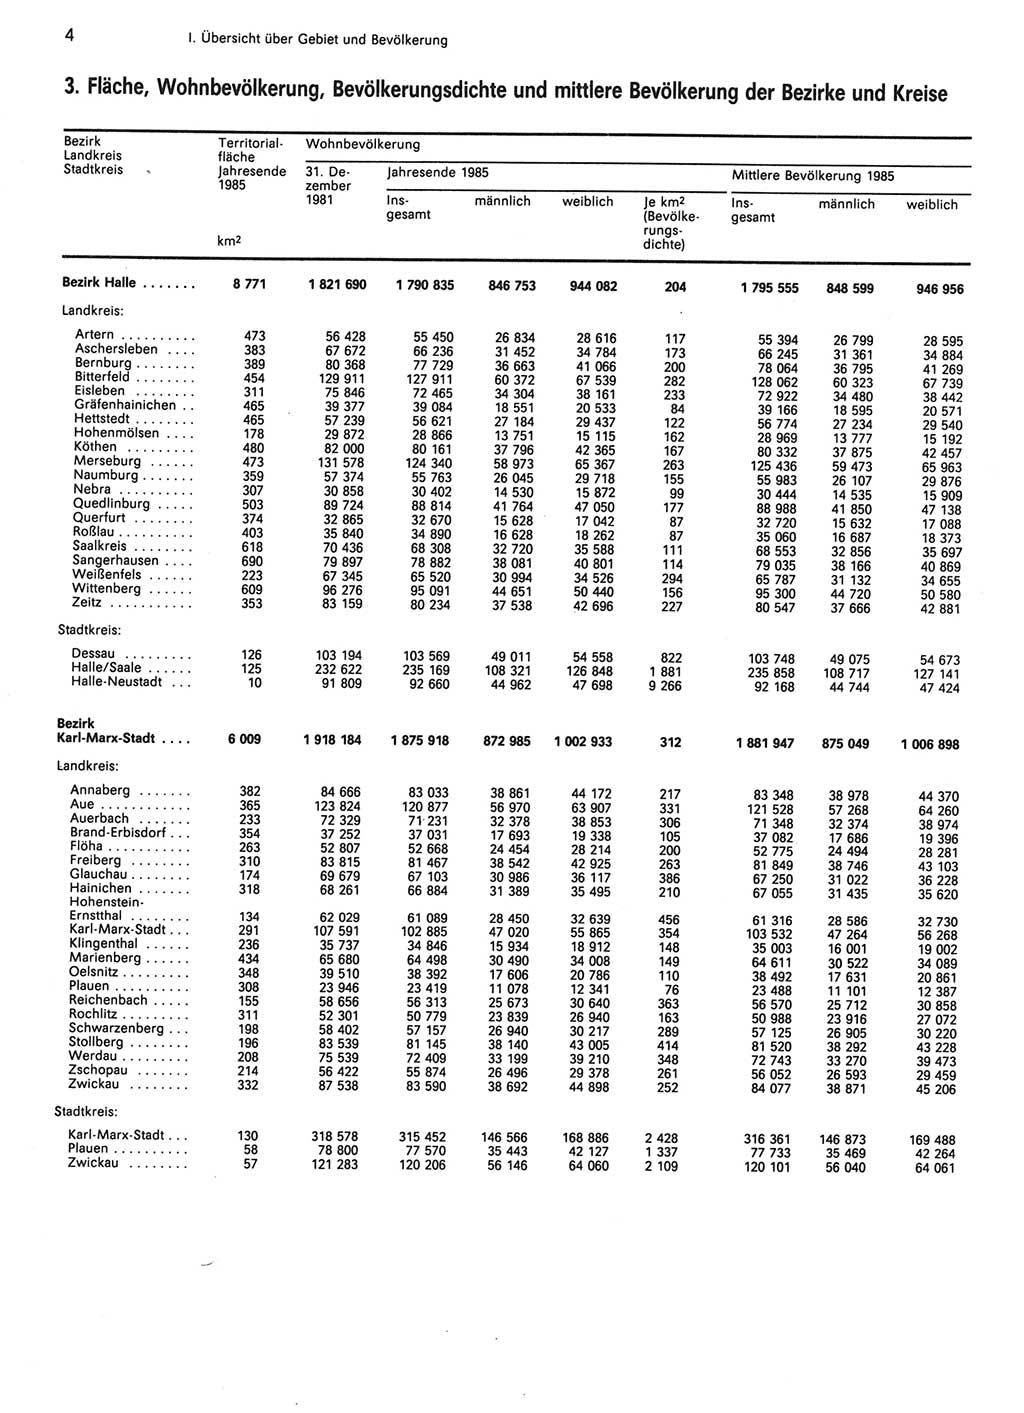 Statistisches Jahrbuch der Deutschen Demokratischen Republik (DDR) 1986, Seite 4 (Stat. Jb. DDR 1986, S. 4)